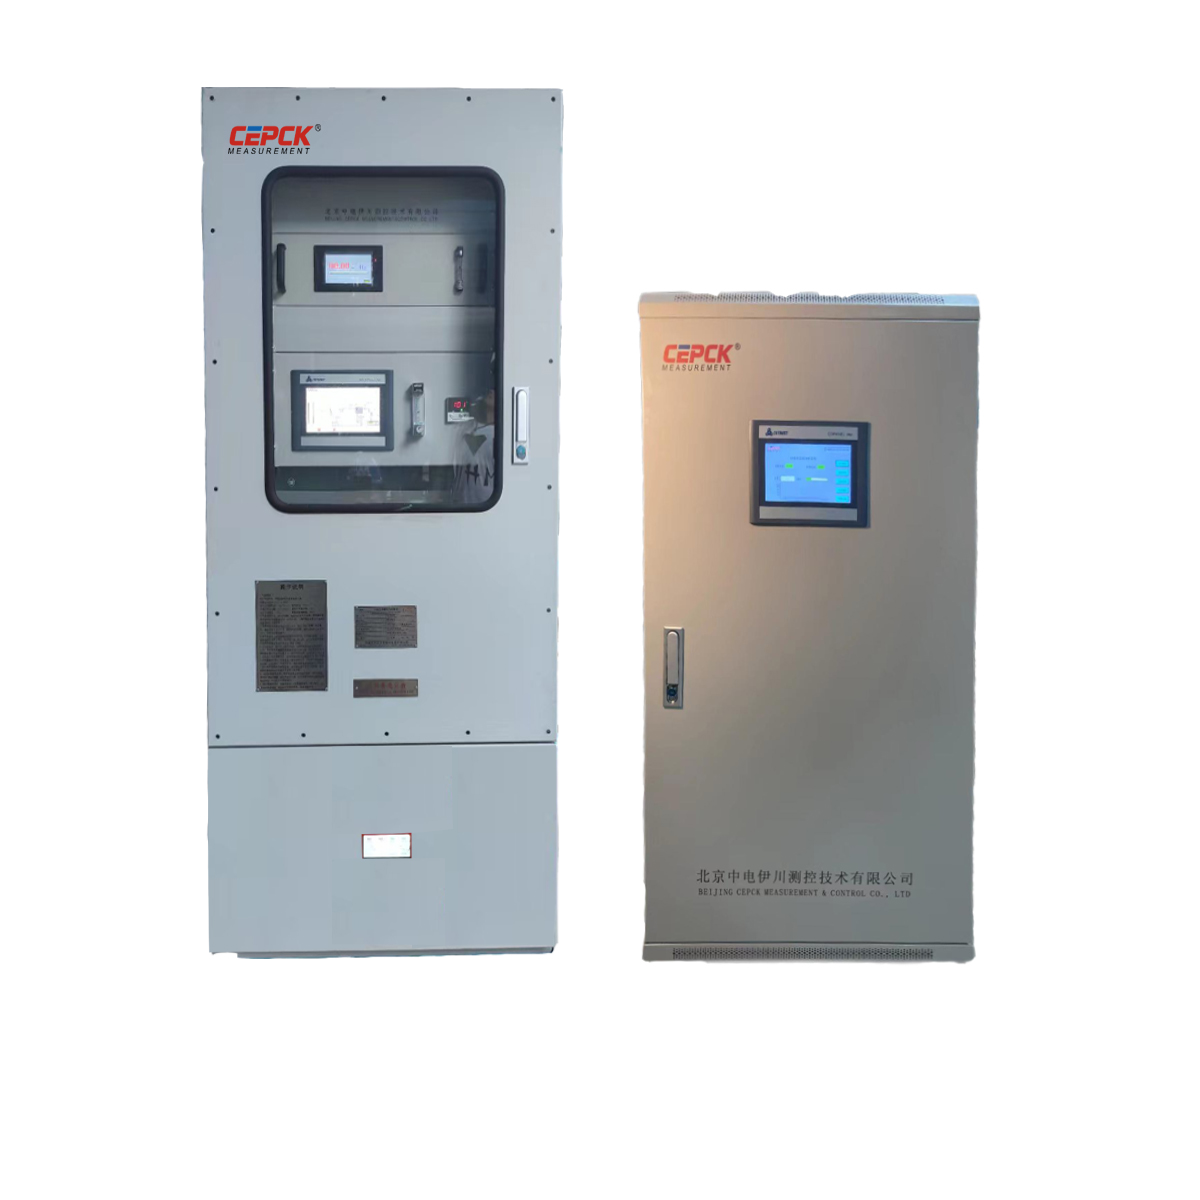 FGA-1200过程控制气体自动化监测系统